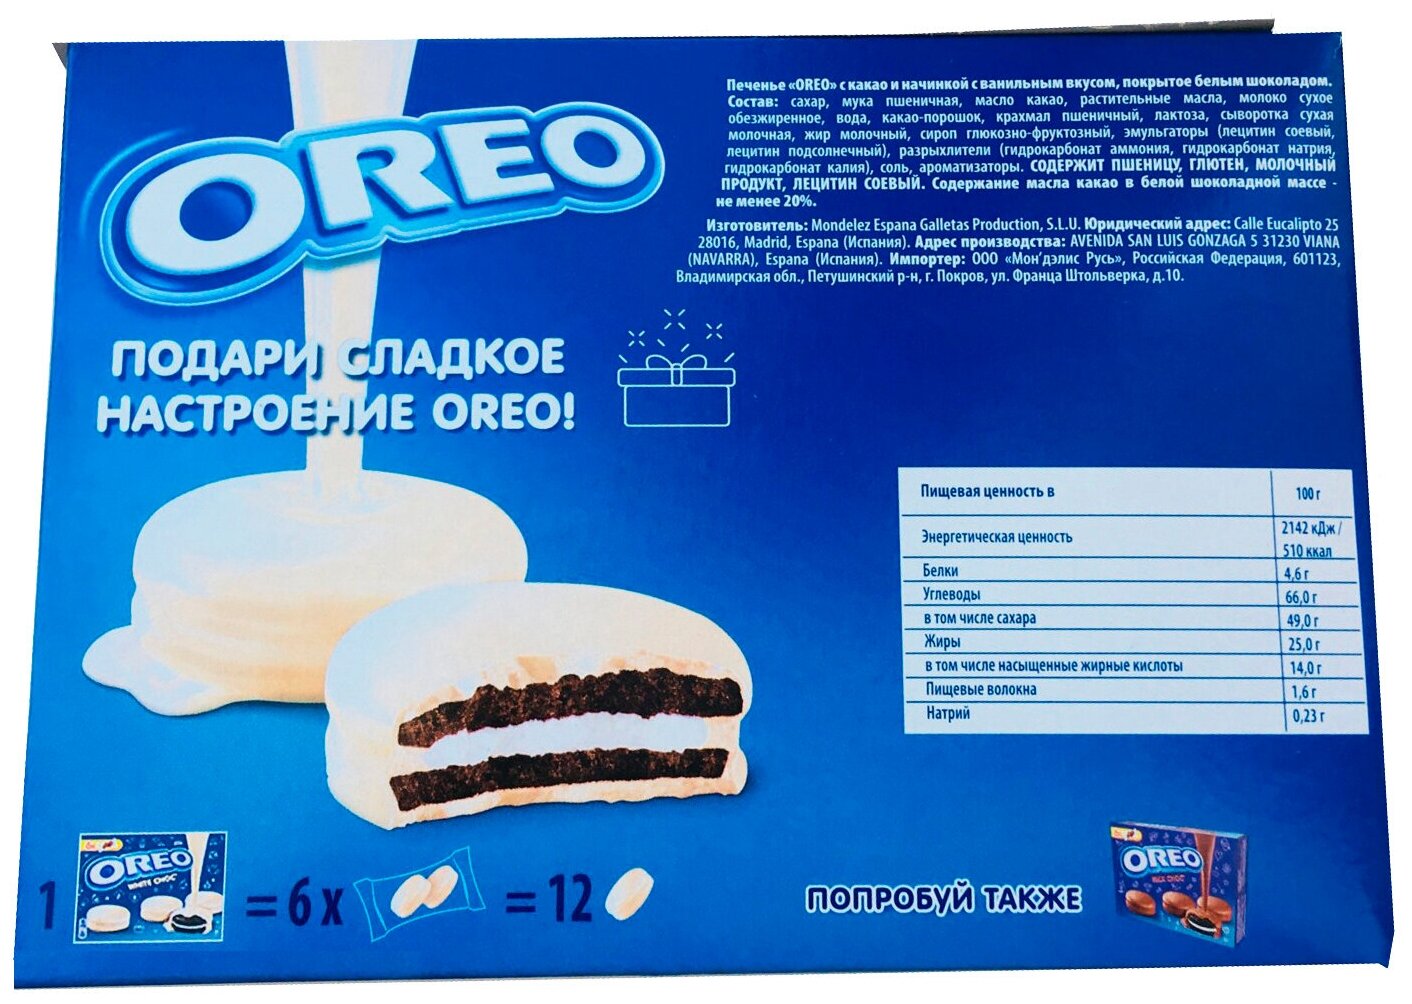 Печенье OREO White Choc / Орео в Белом Шоколаде 246 г. (Испания)